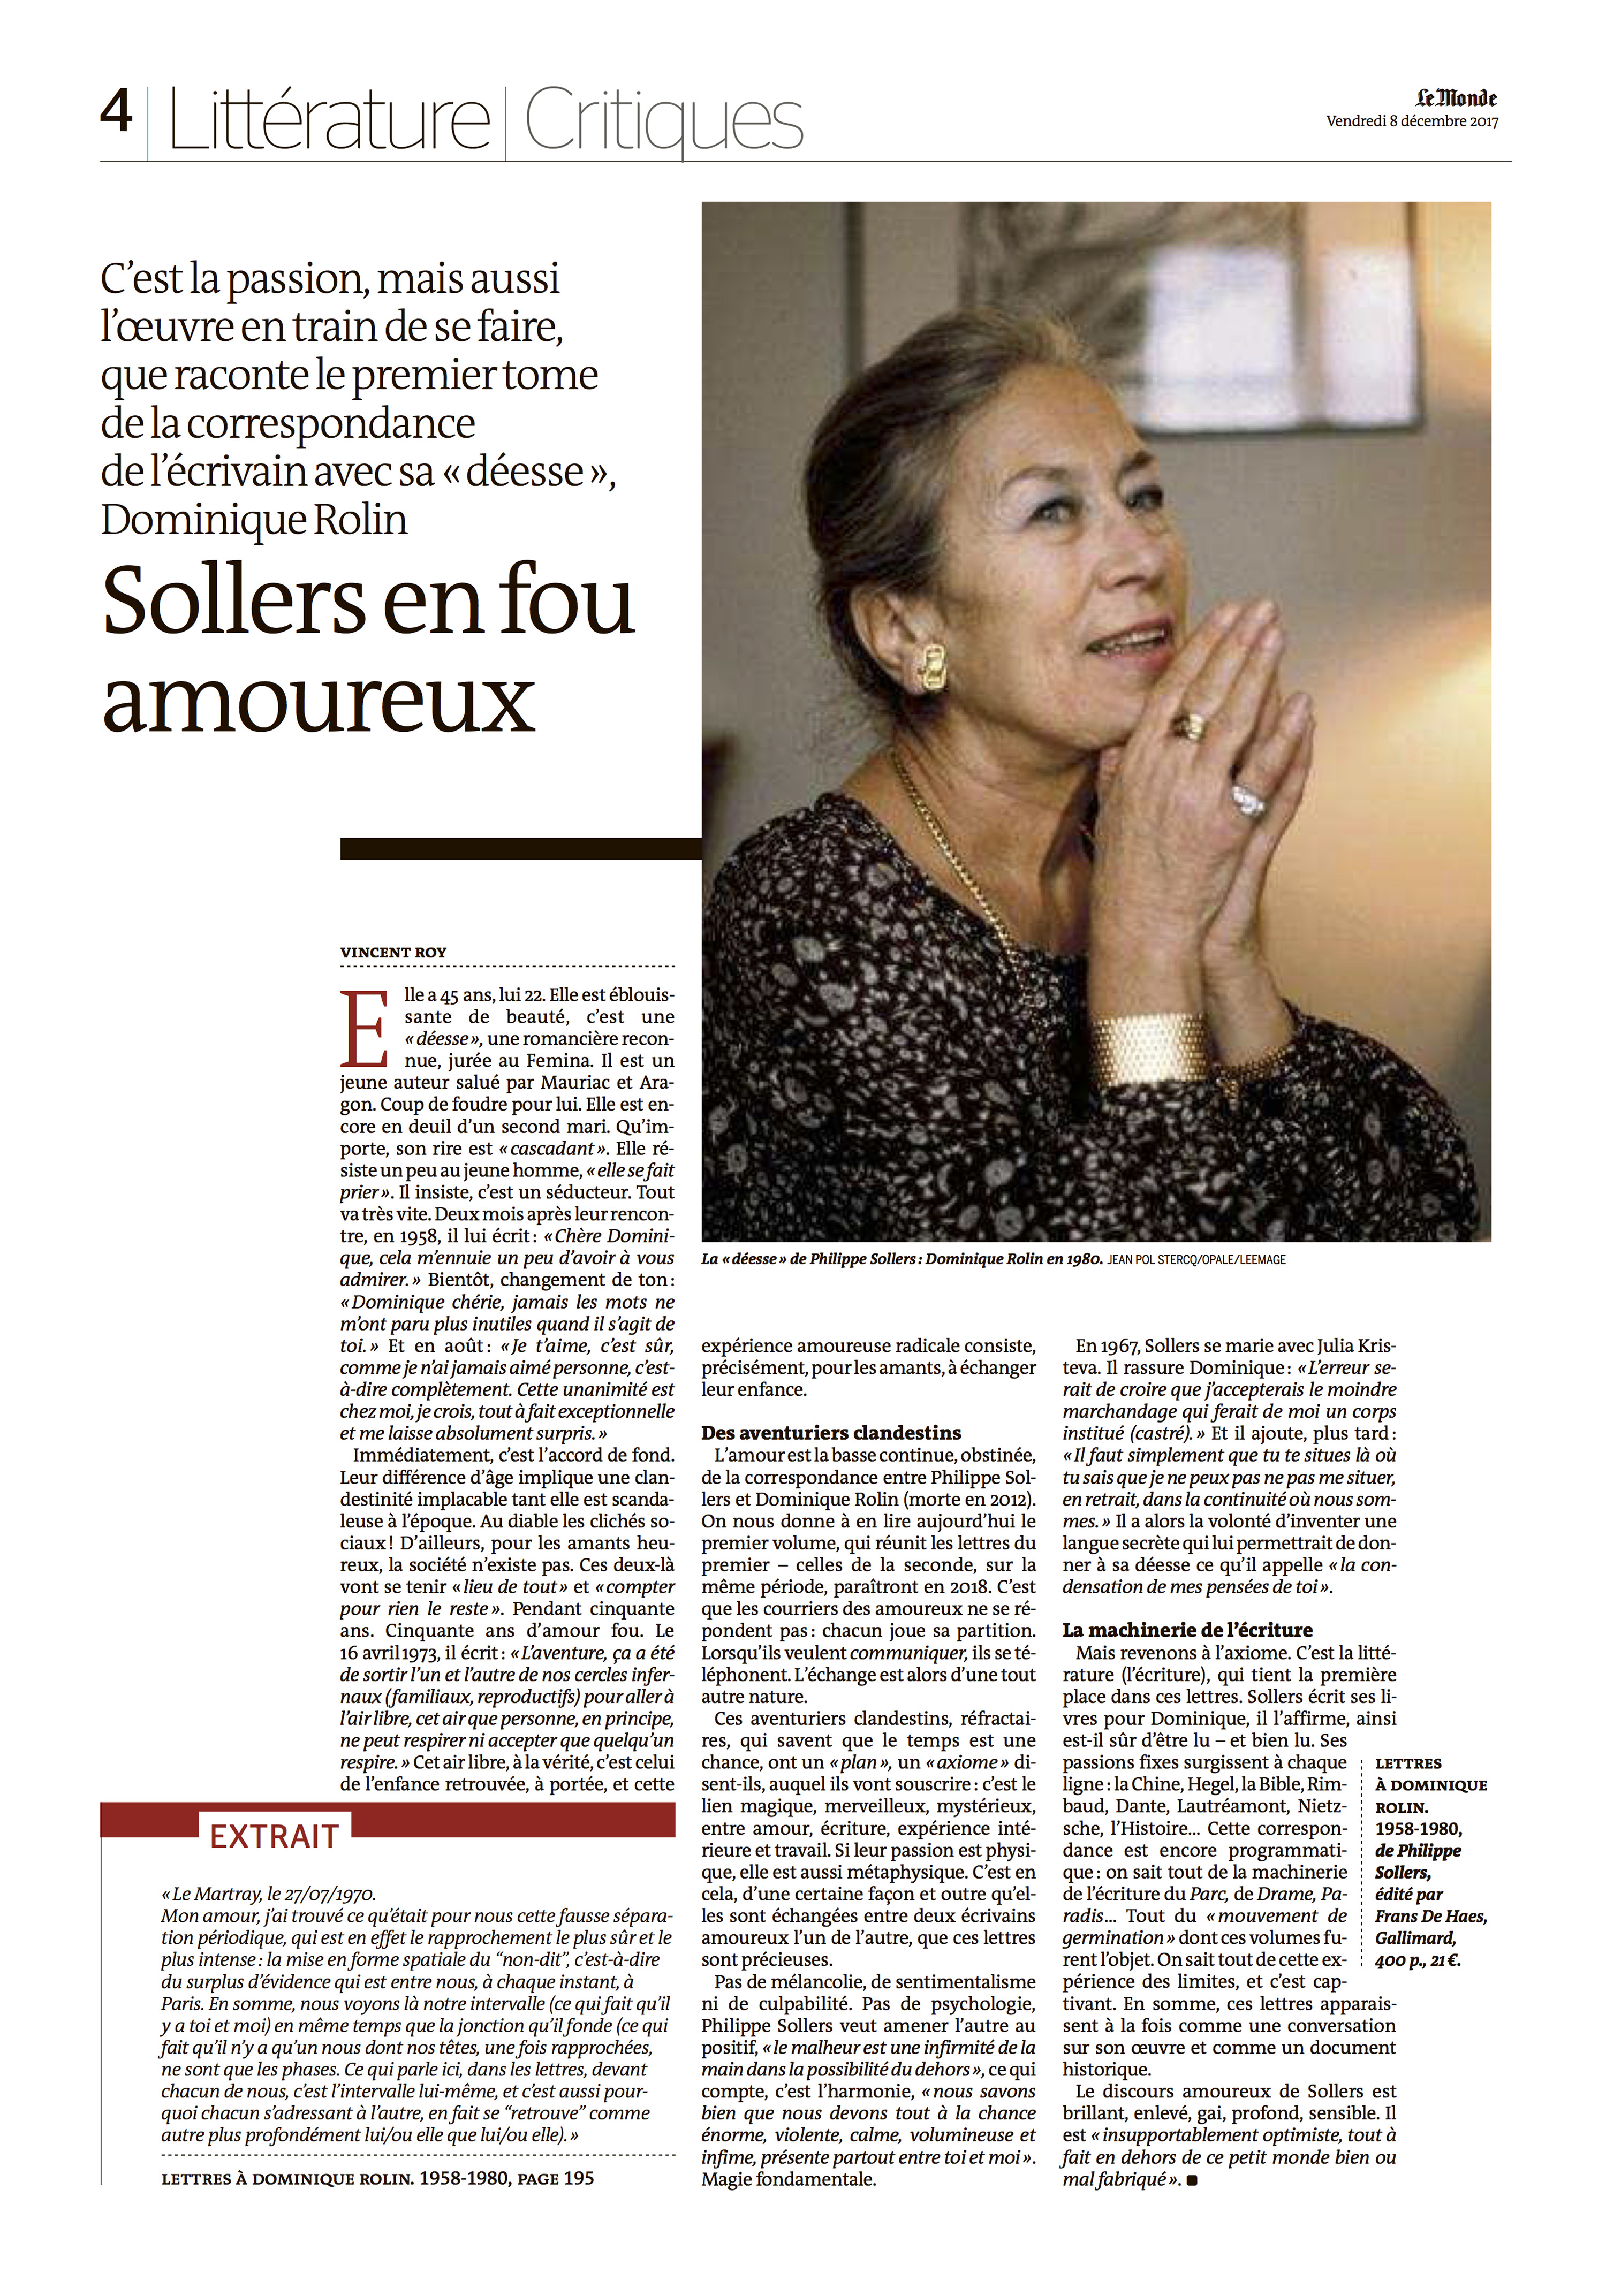 Philippe Sollers en fou amoureux, Le Monde du 8 décembre 2017